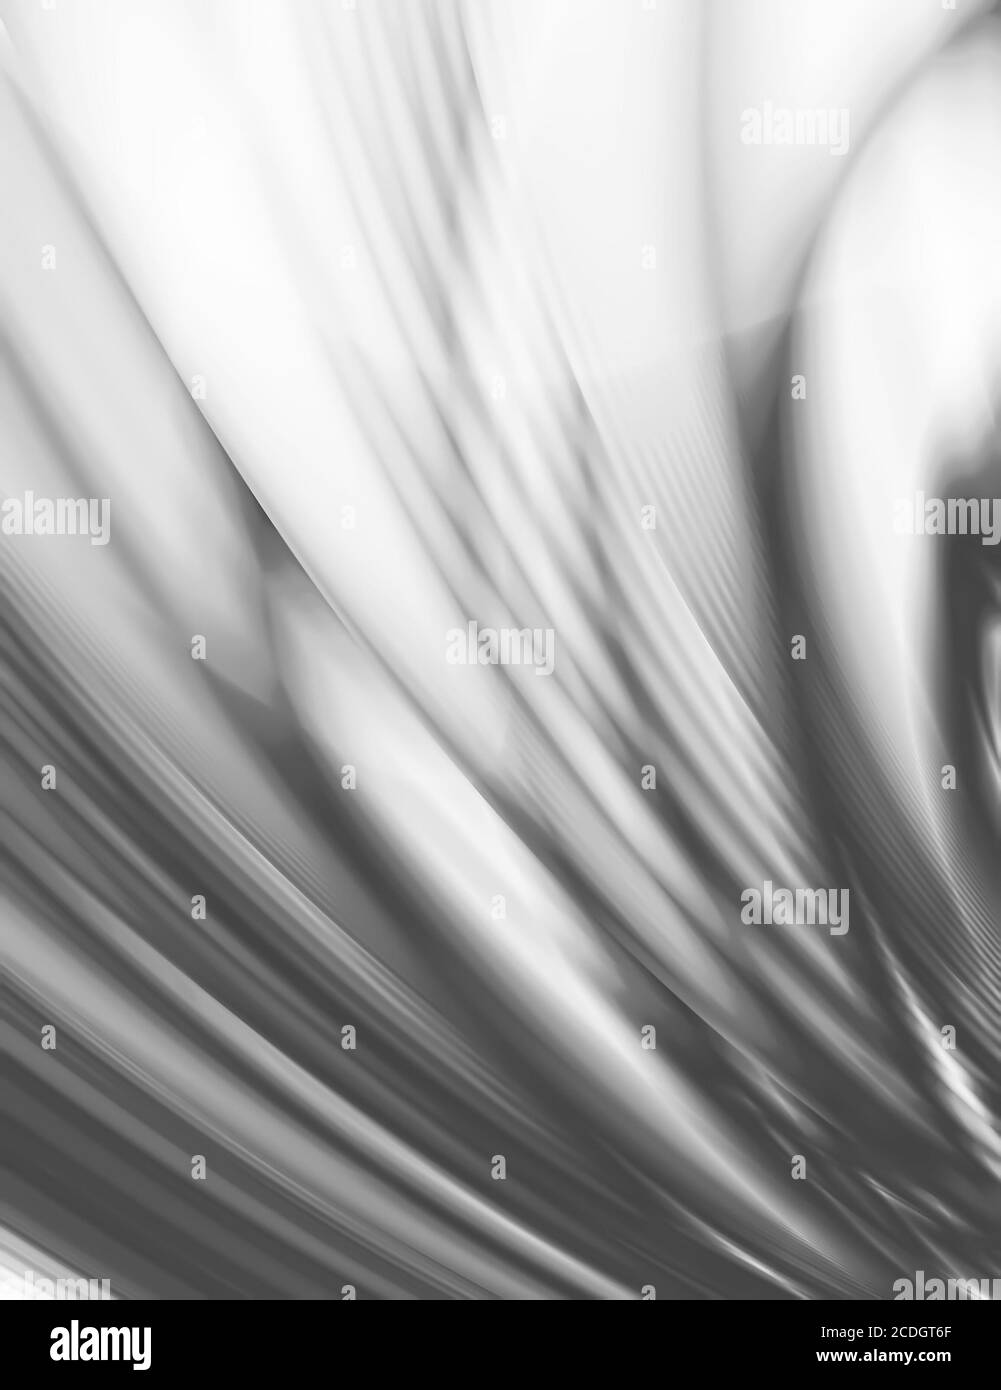 Abstrakter Hintergrund von weiß-grauen glatten Wellen Stockfoto